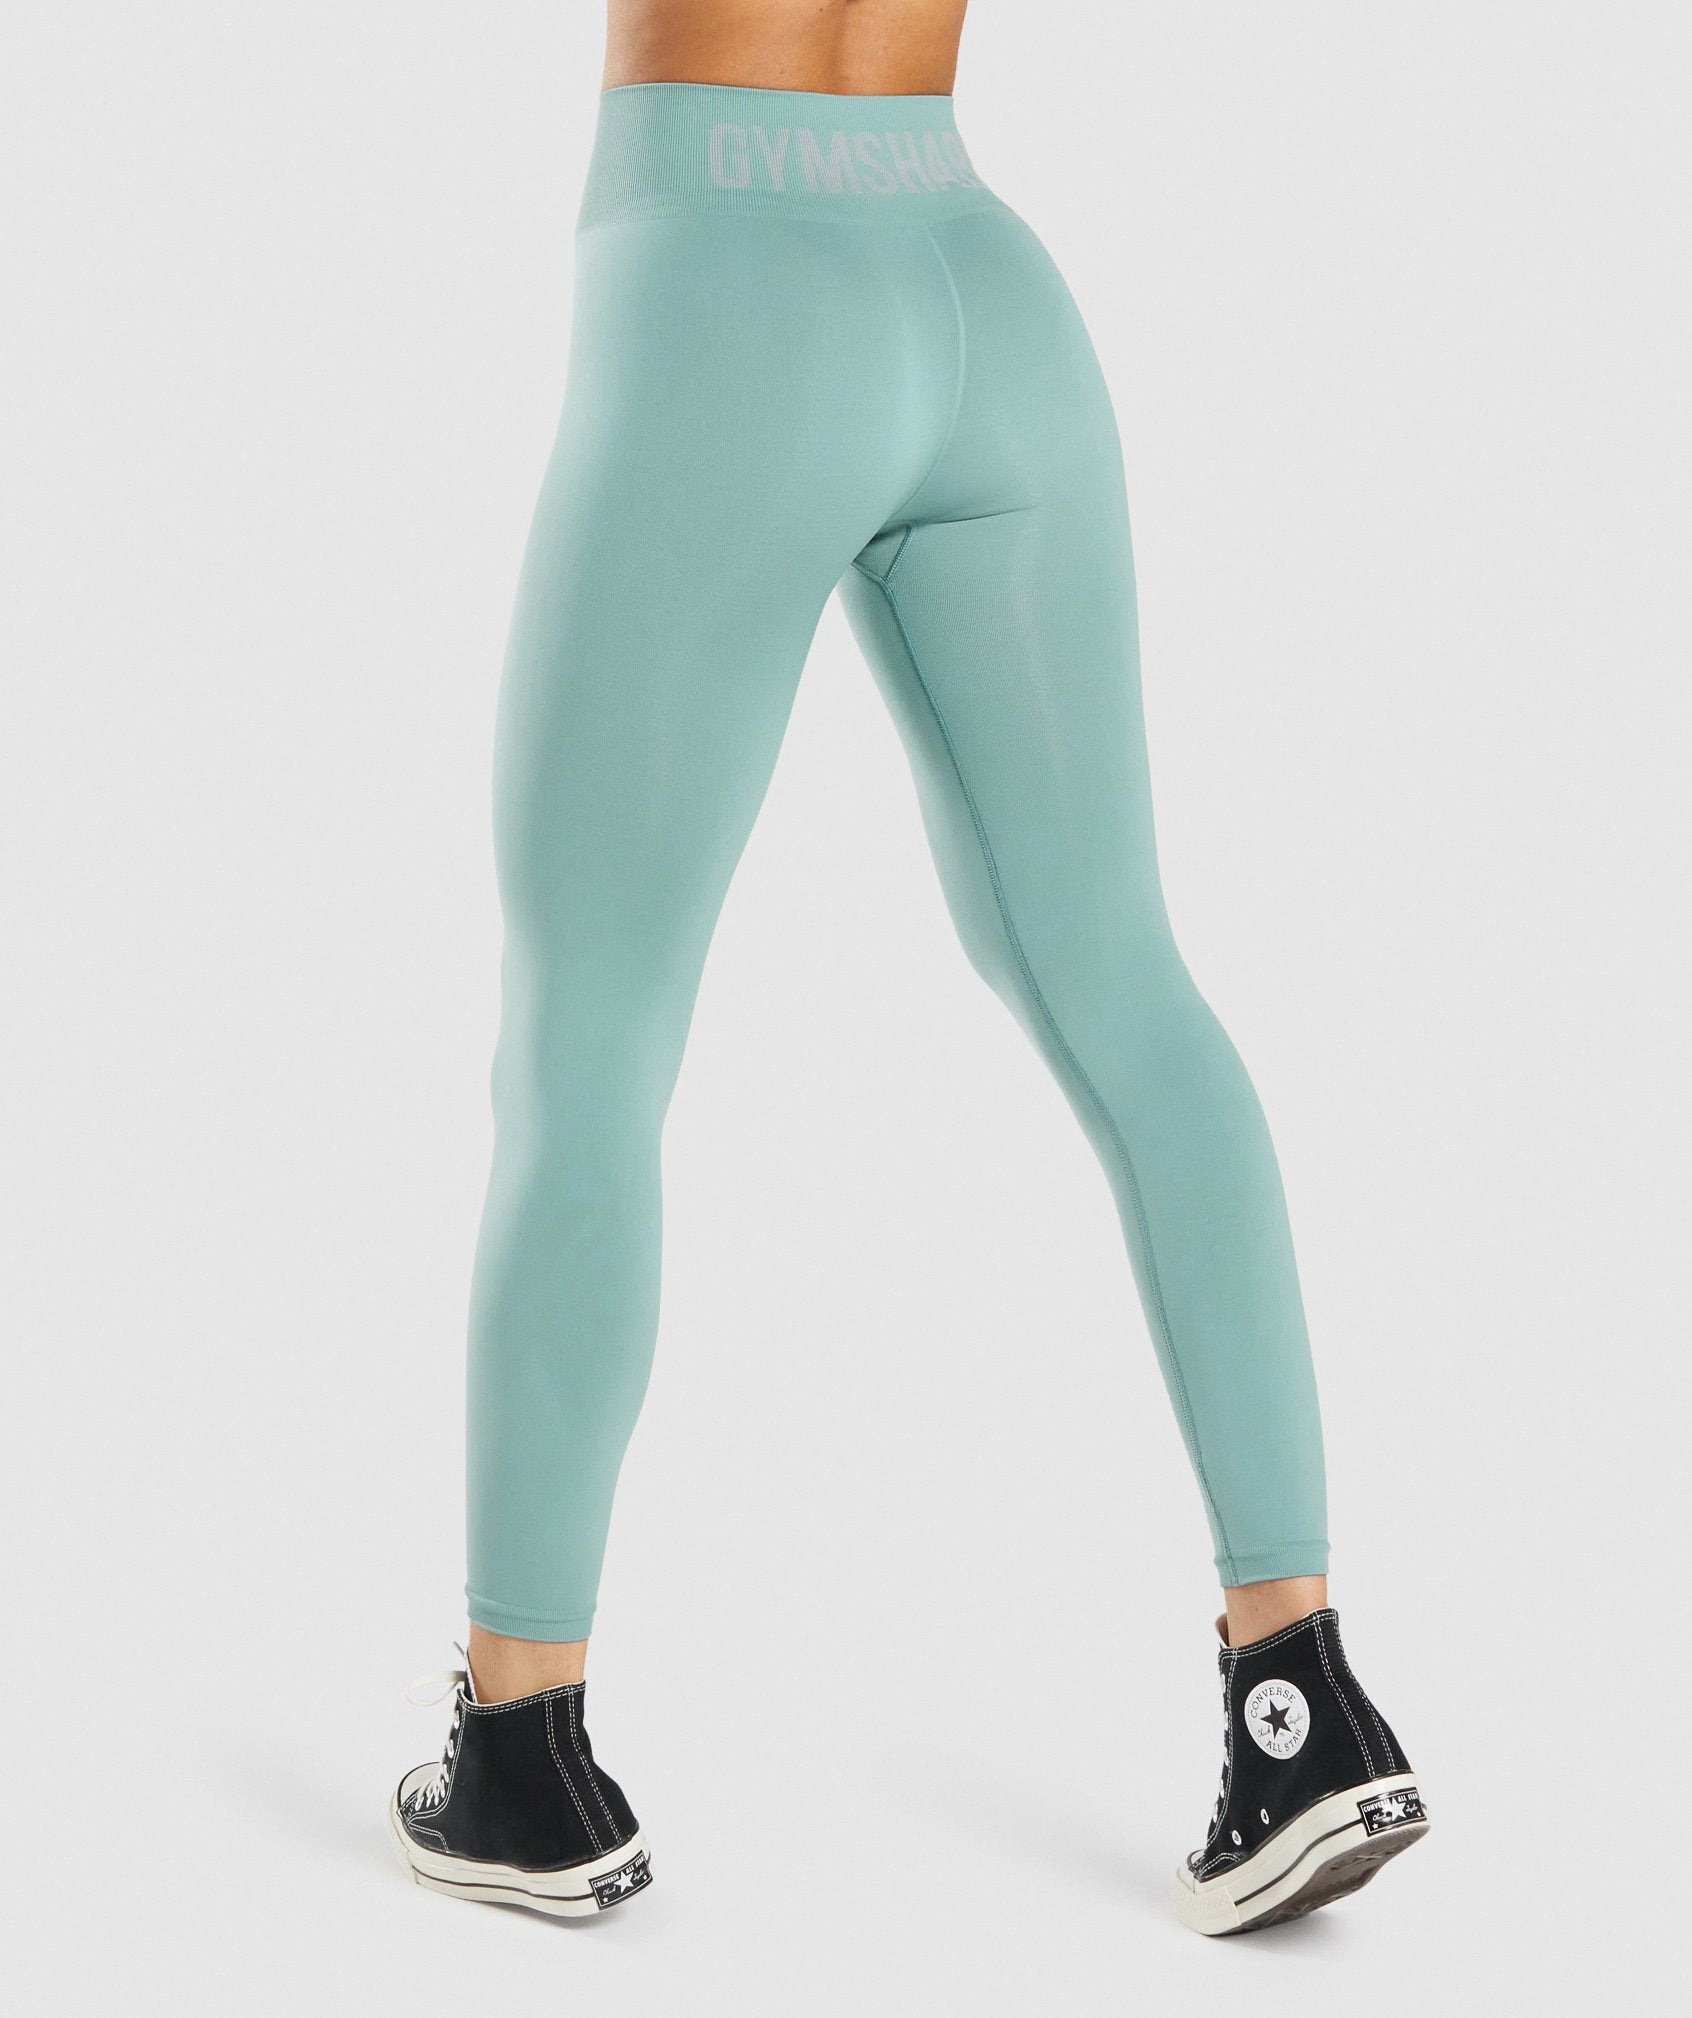 Gymshark Fit Leggings - Grey/Light Green 